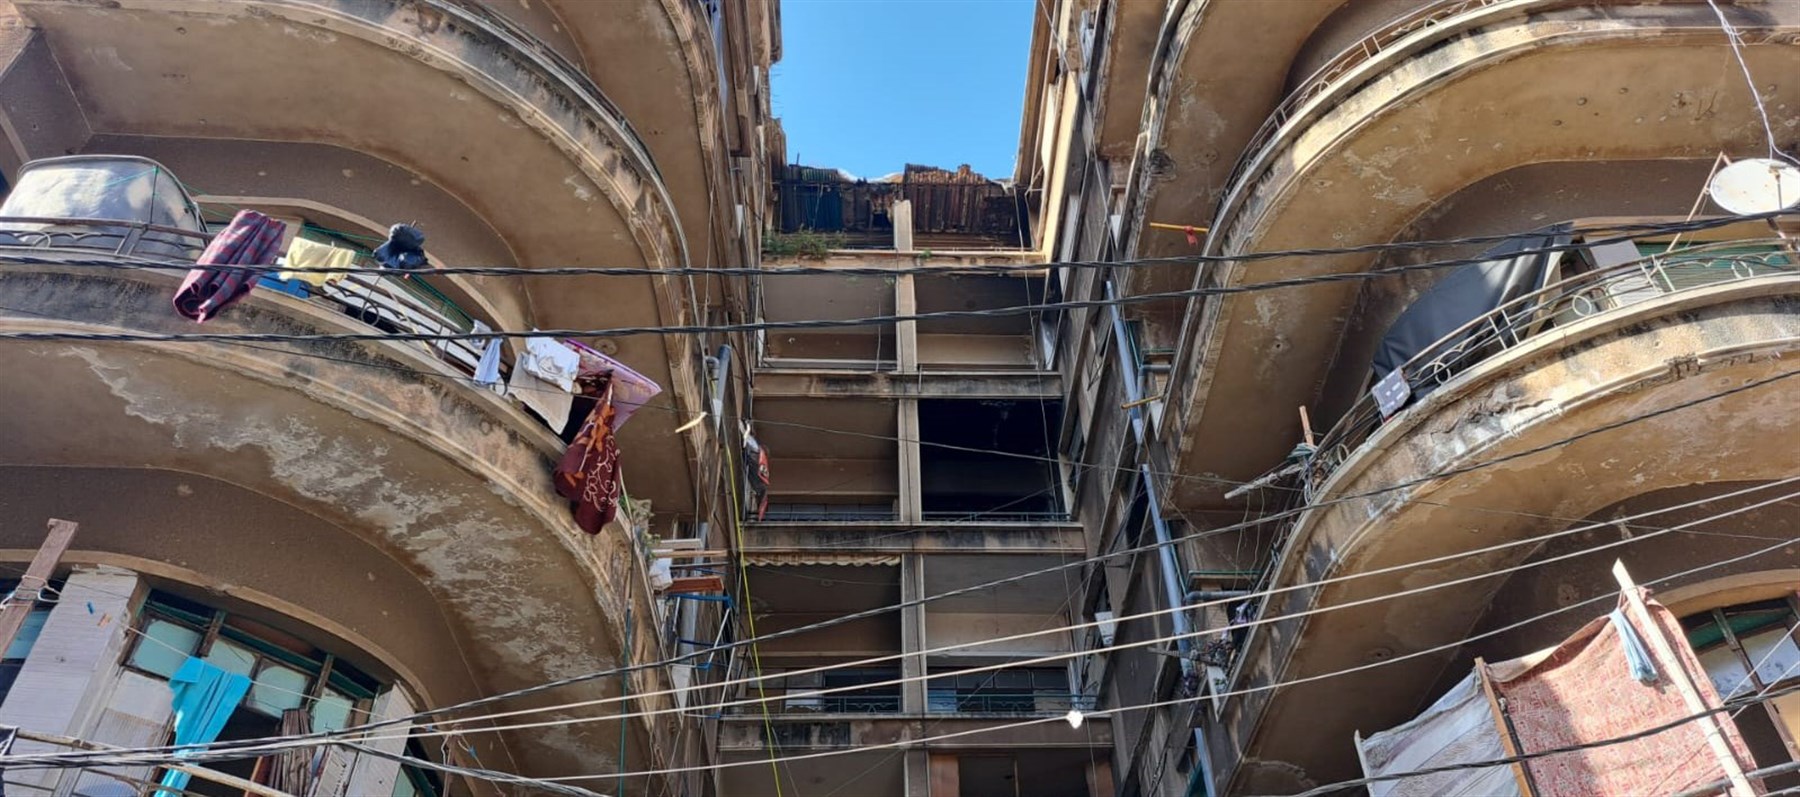 الجامعة الأميركية في بيروت تطلق منصة جديدة، تداعي الحيوات – أحوال السكن المجهولة في بيروت